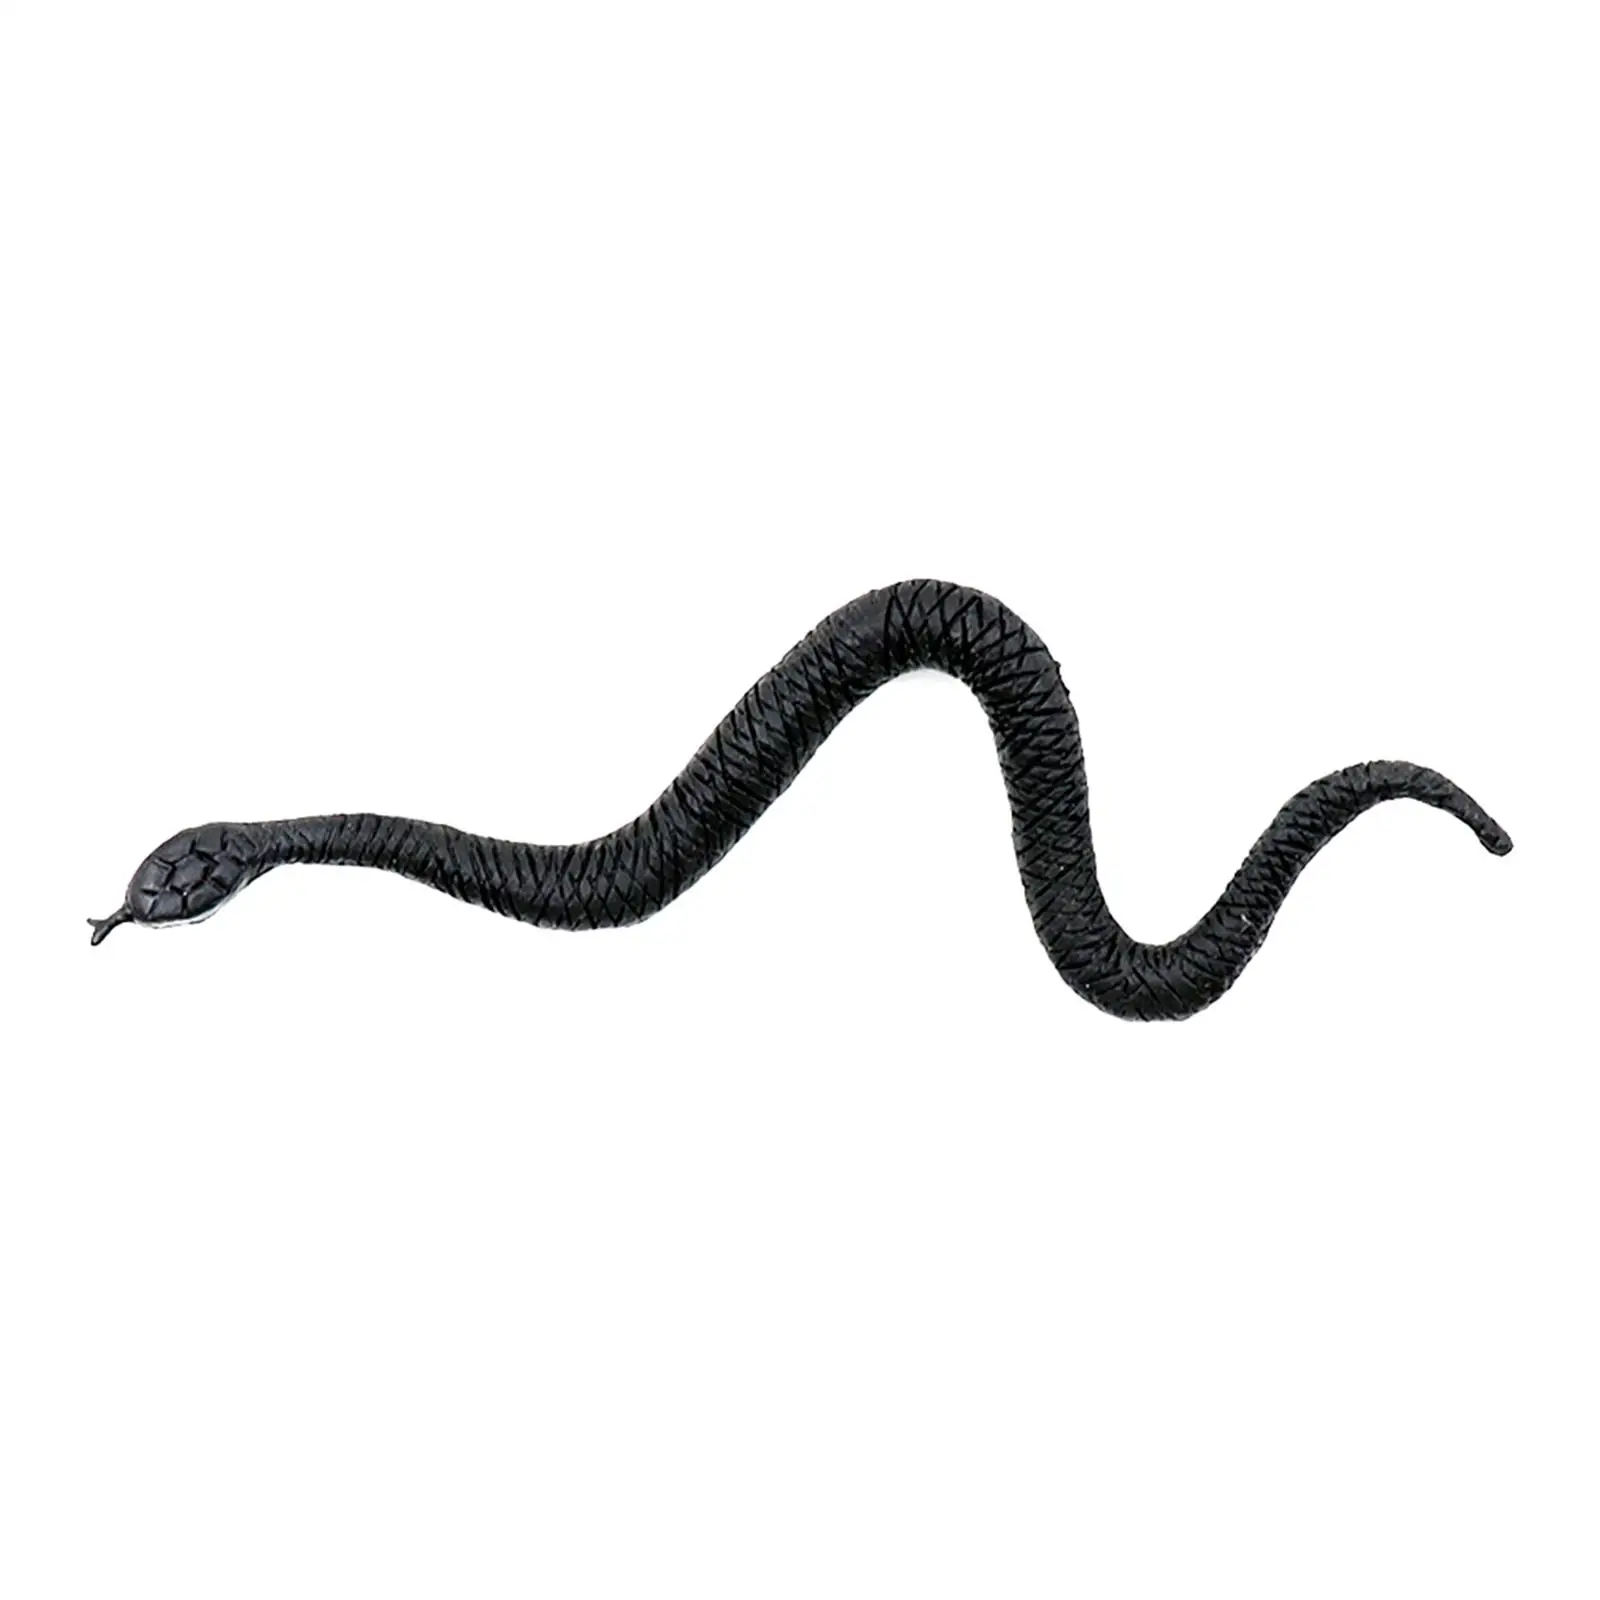 

Высокая имитация змеи Апрельская игрушка для дурака дикая природа искусственные трюки пугающие розыгрыши реквизит искусственная змея фигурка